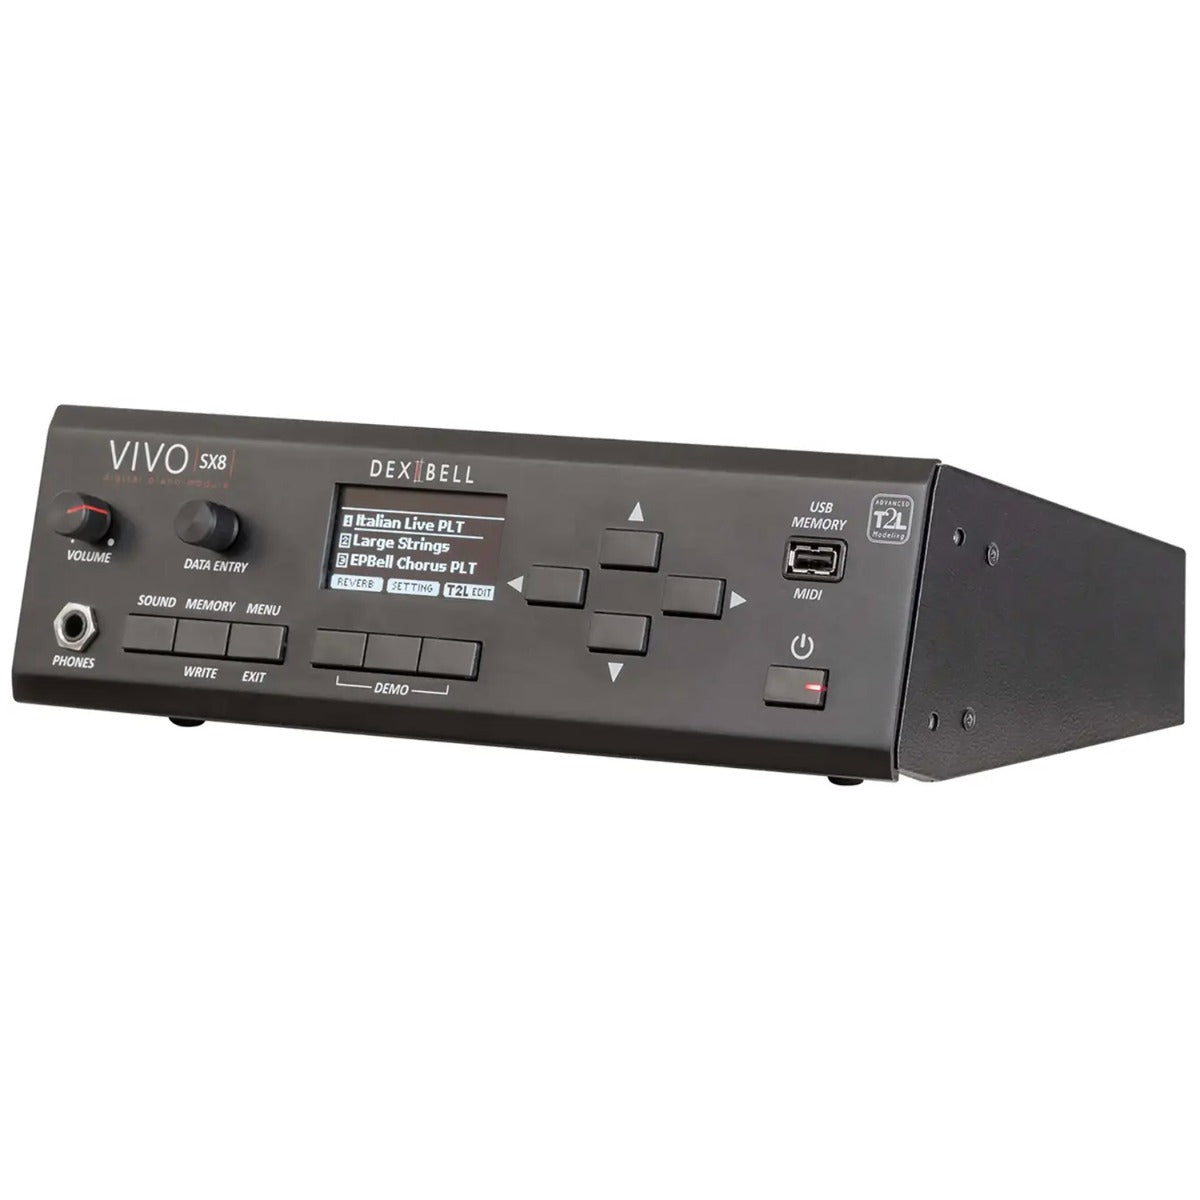 Dexibell Vivo SX8 Sound Module, View 2